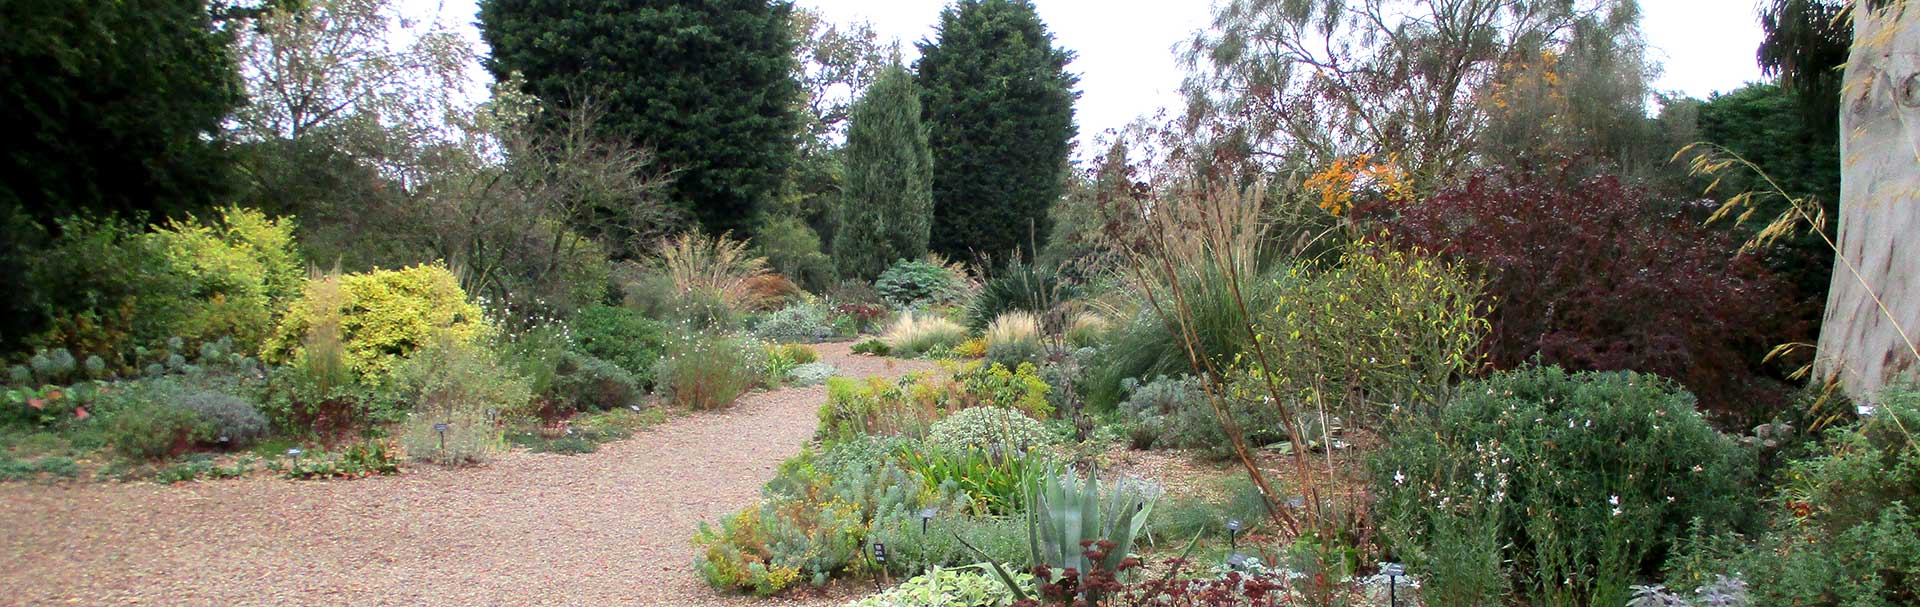 Mediterranean garden ideas - Inspiration for your own dry garden